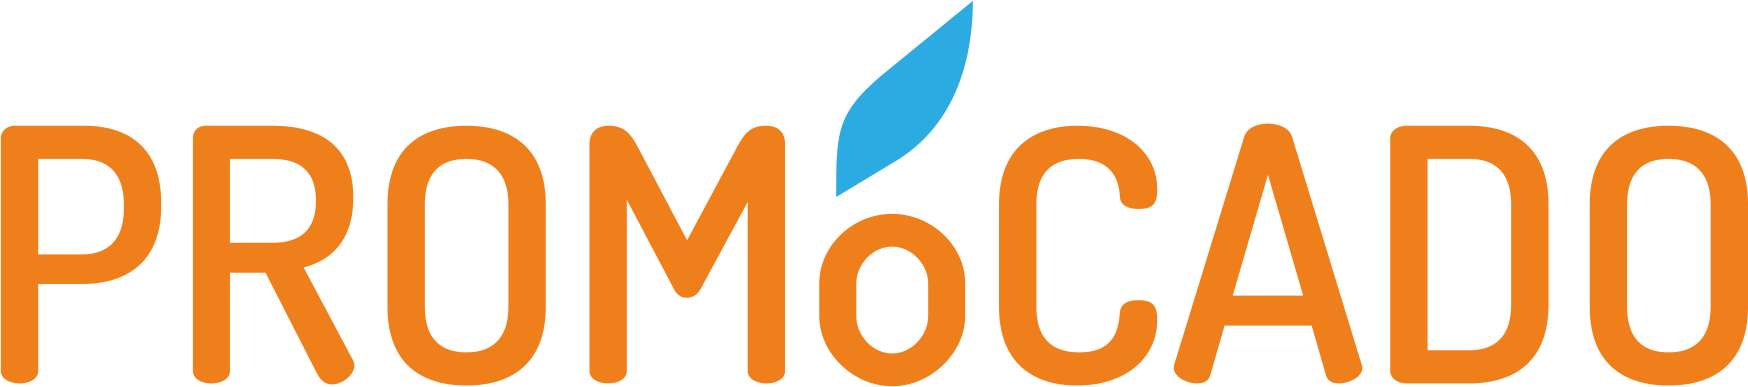 Promocado Logo